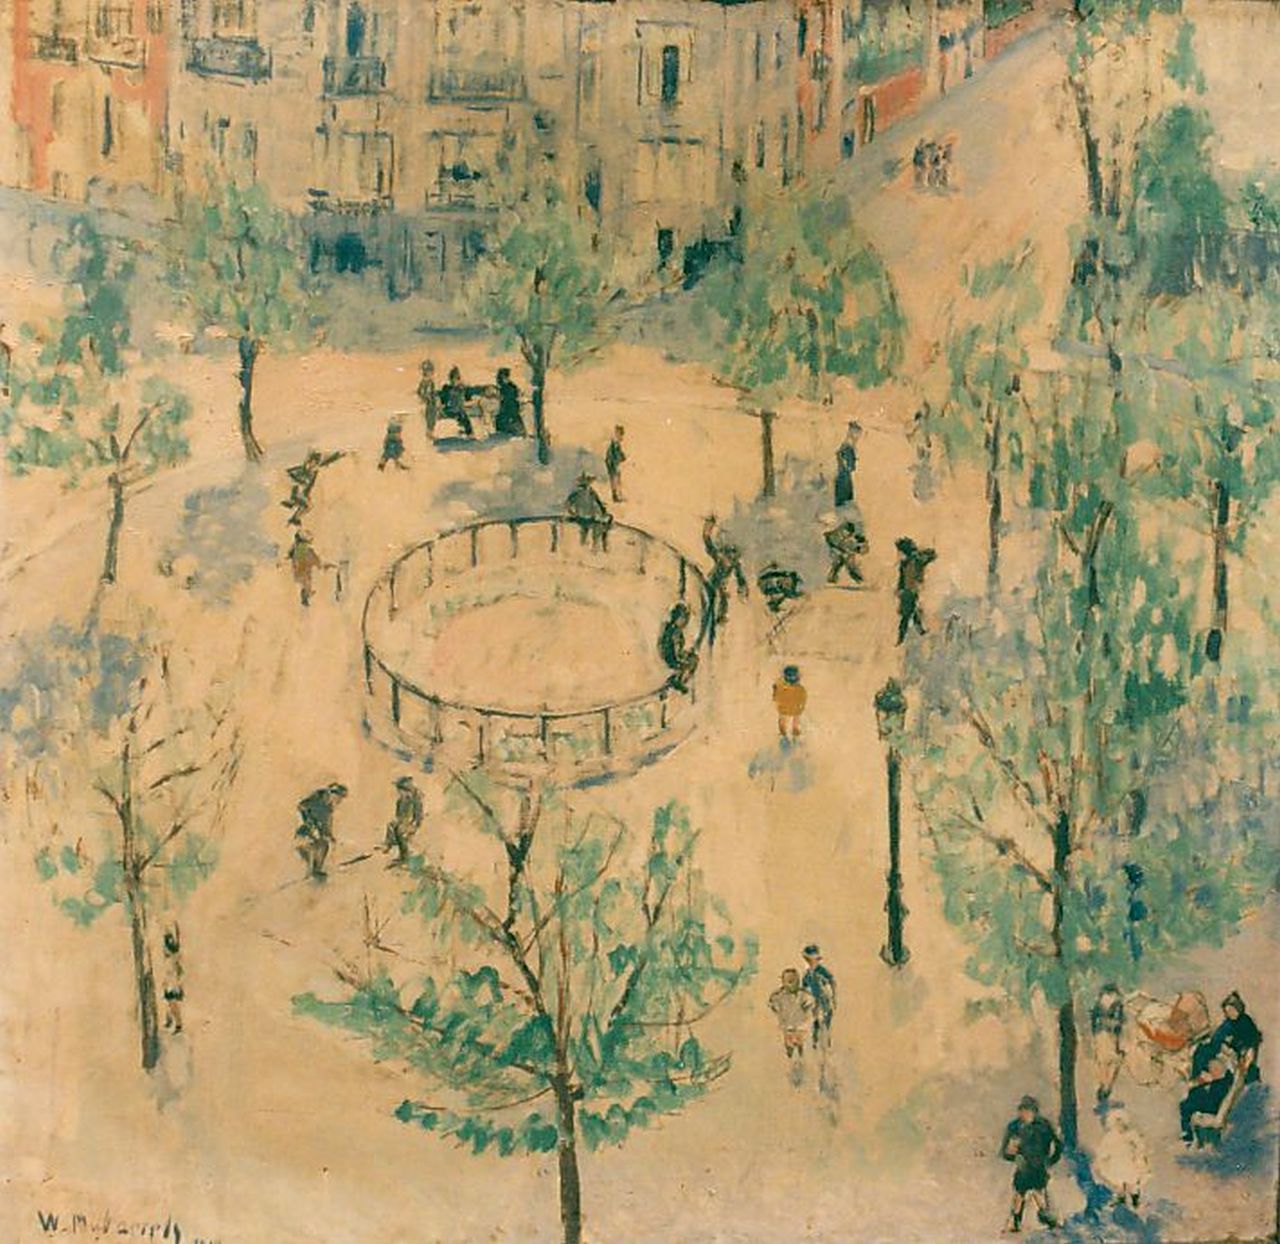 Paerels W.A.  | 'Willem' Adriaan Paerels, Stadsgezicht, olieverf op doek 72,5 x 74,0 cm, gesigneerd linksonder en gedateerd 1914